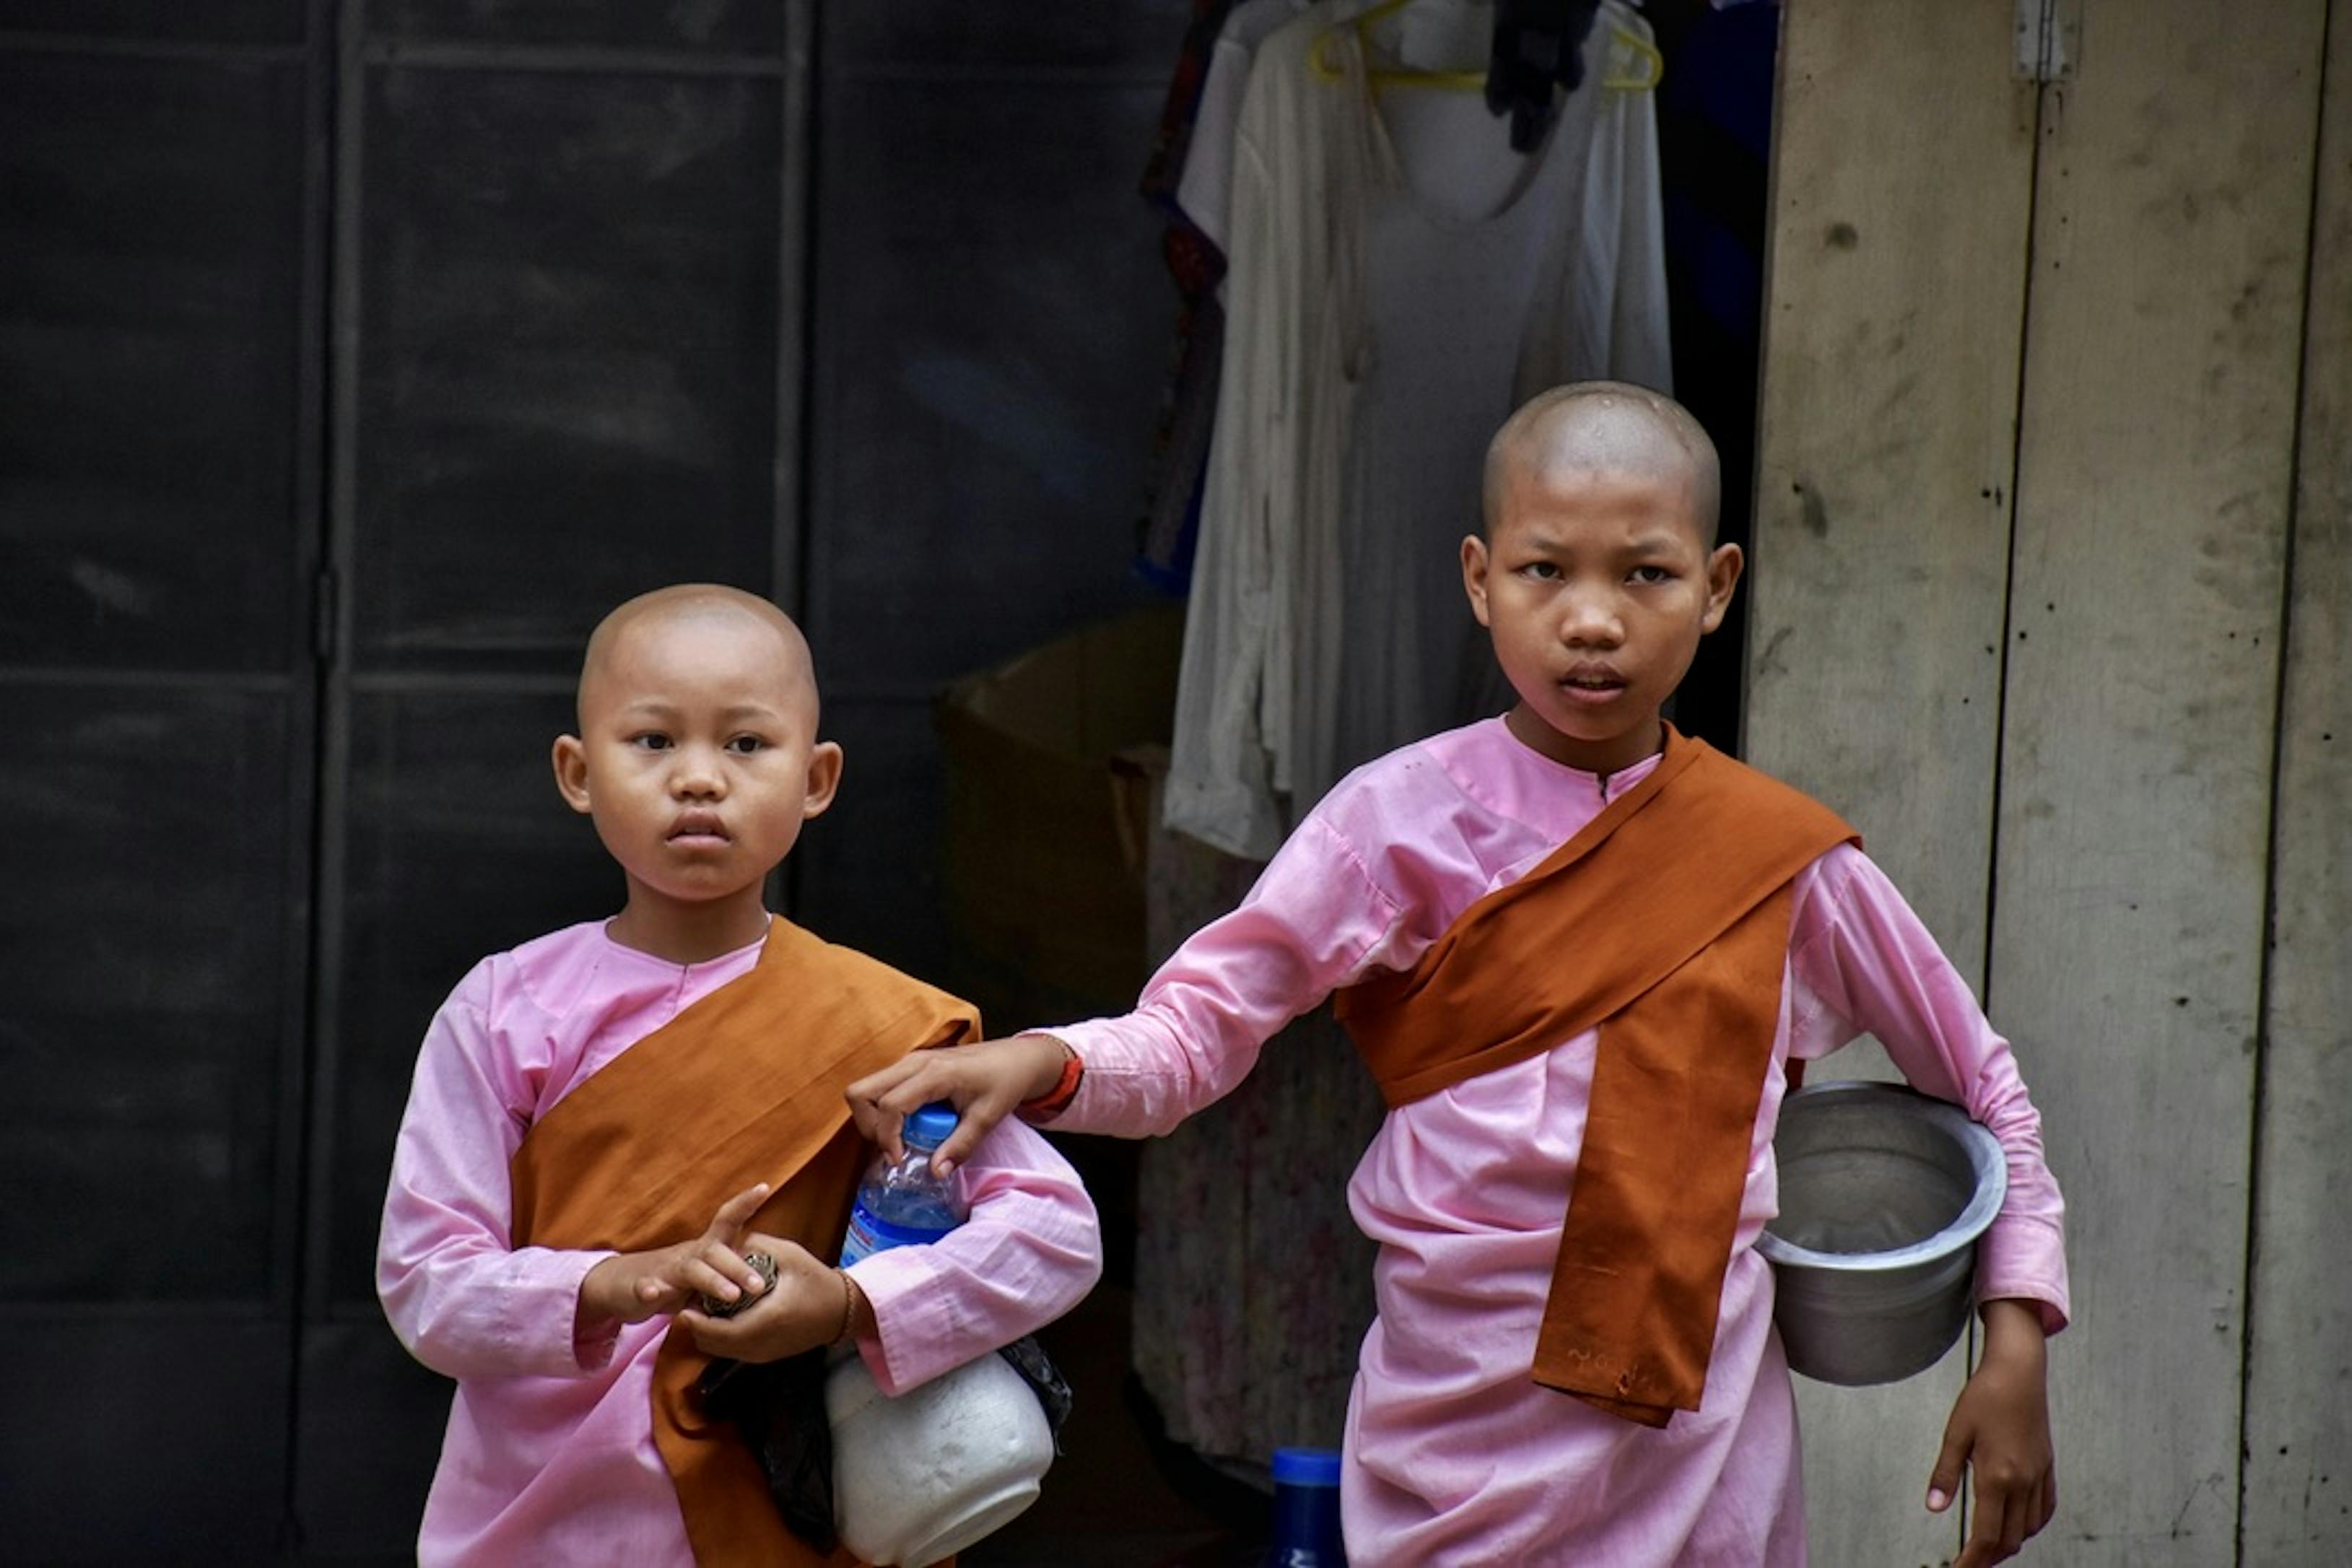 Birmania, due bambini tengono in mano degli utensili per cucinare. La foto fa parte della raccolta di scatti esposti al MAXXI fino al 5 marzo nel contesto della mostra "Can you smile for me? L'infanzia sperduta"